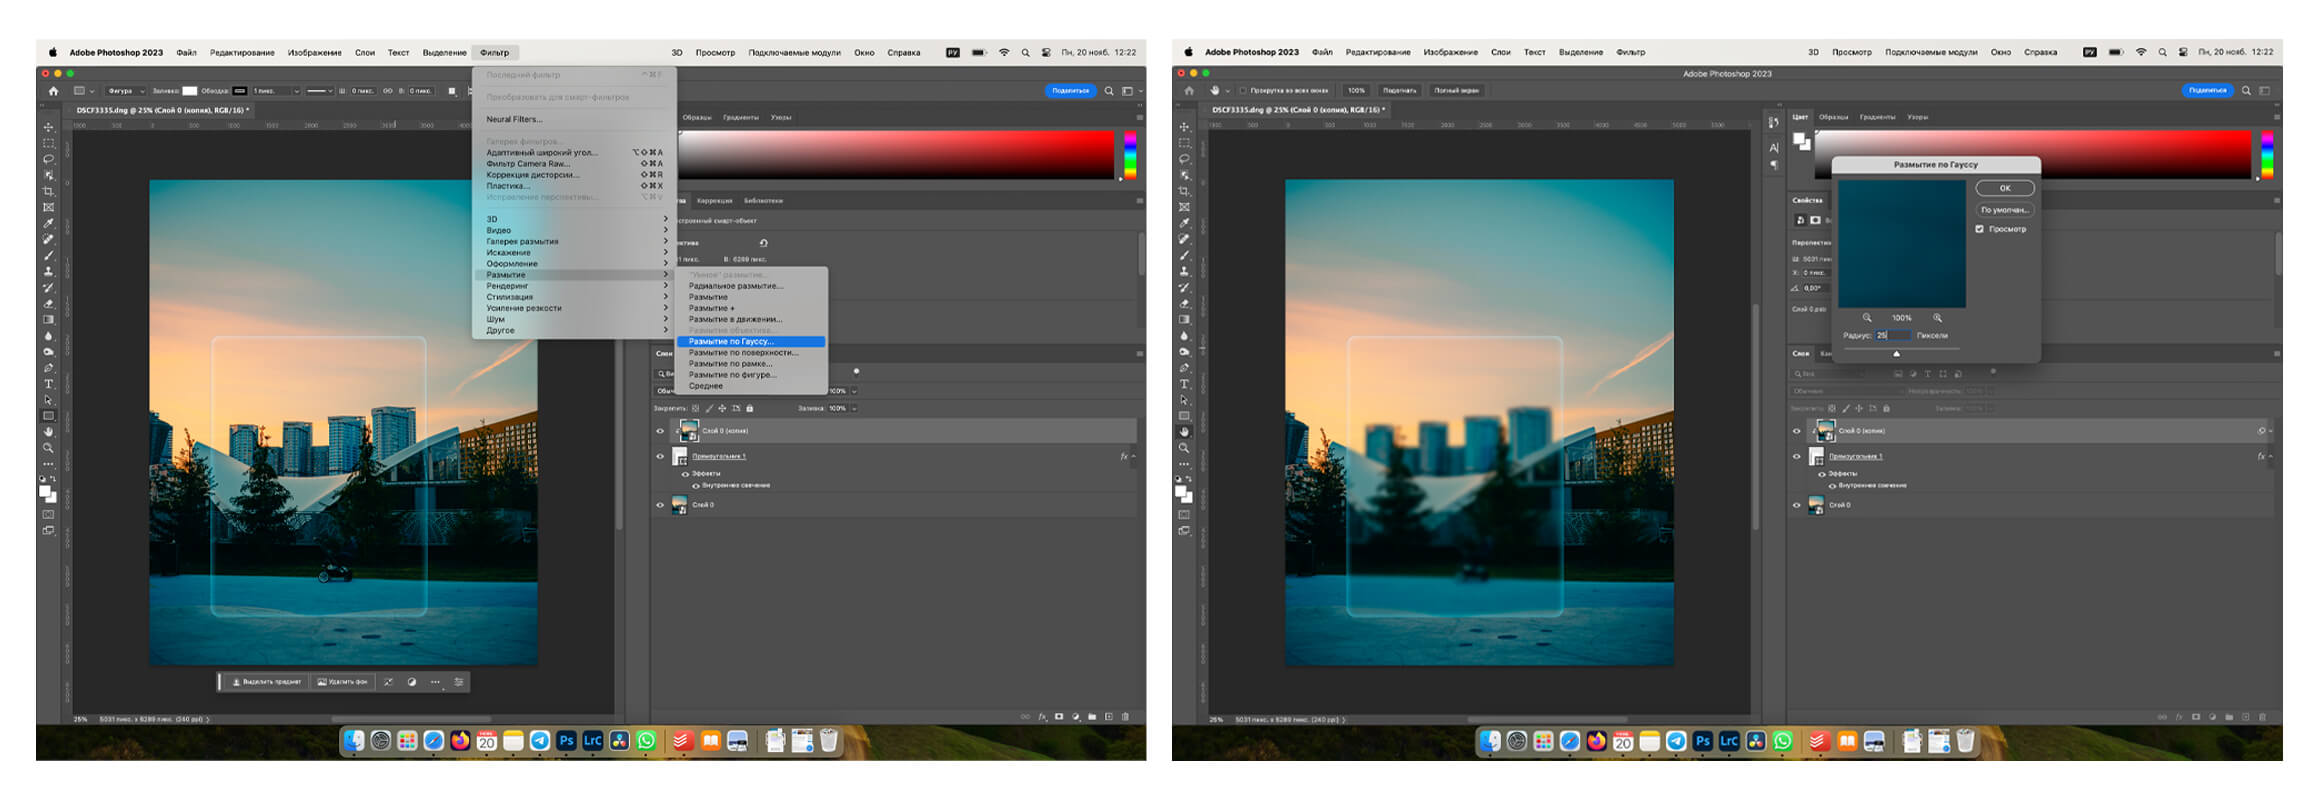 5 шаг создания эффекта «матового стекла» в Adobe Photoshop